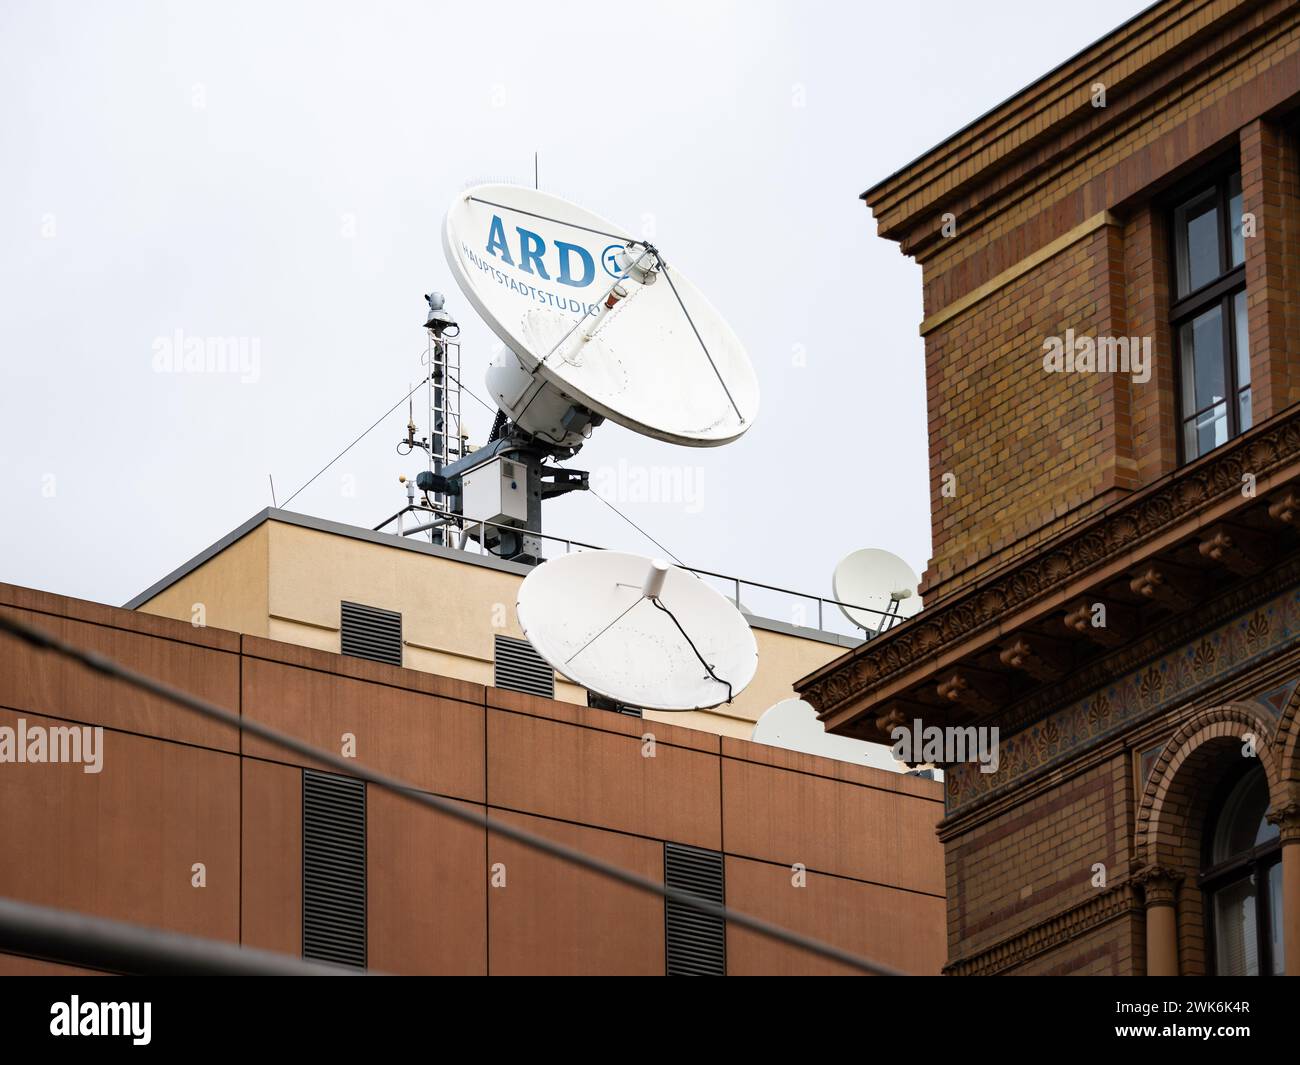 Antenna satellitare dell'ARD Hauptstadtstudio (studio della capitale) sul tetto dell'edificio. Invio di una produzione televisiva con un'antenna parabolica. Foto Stock